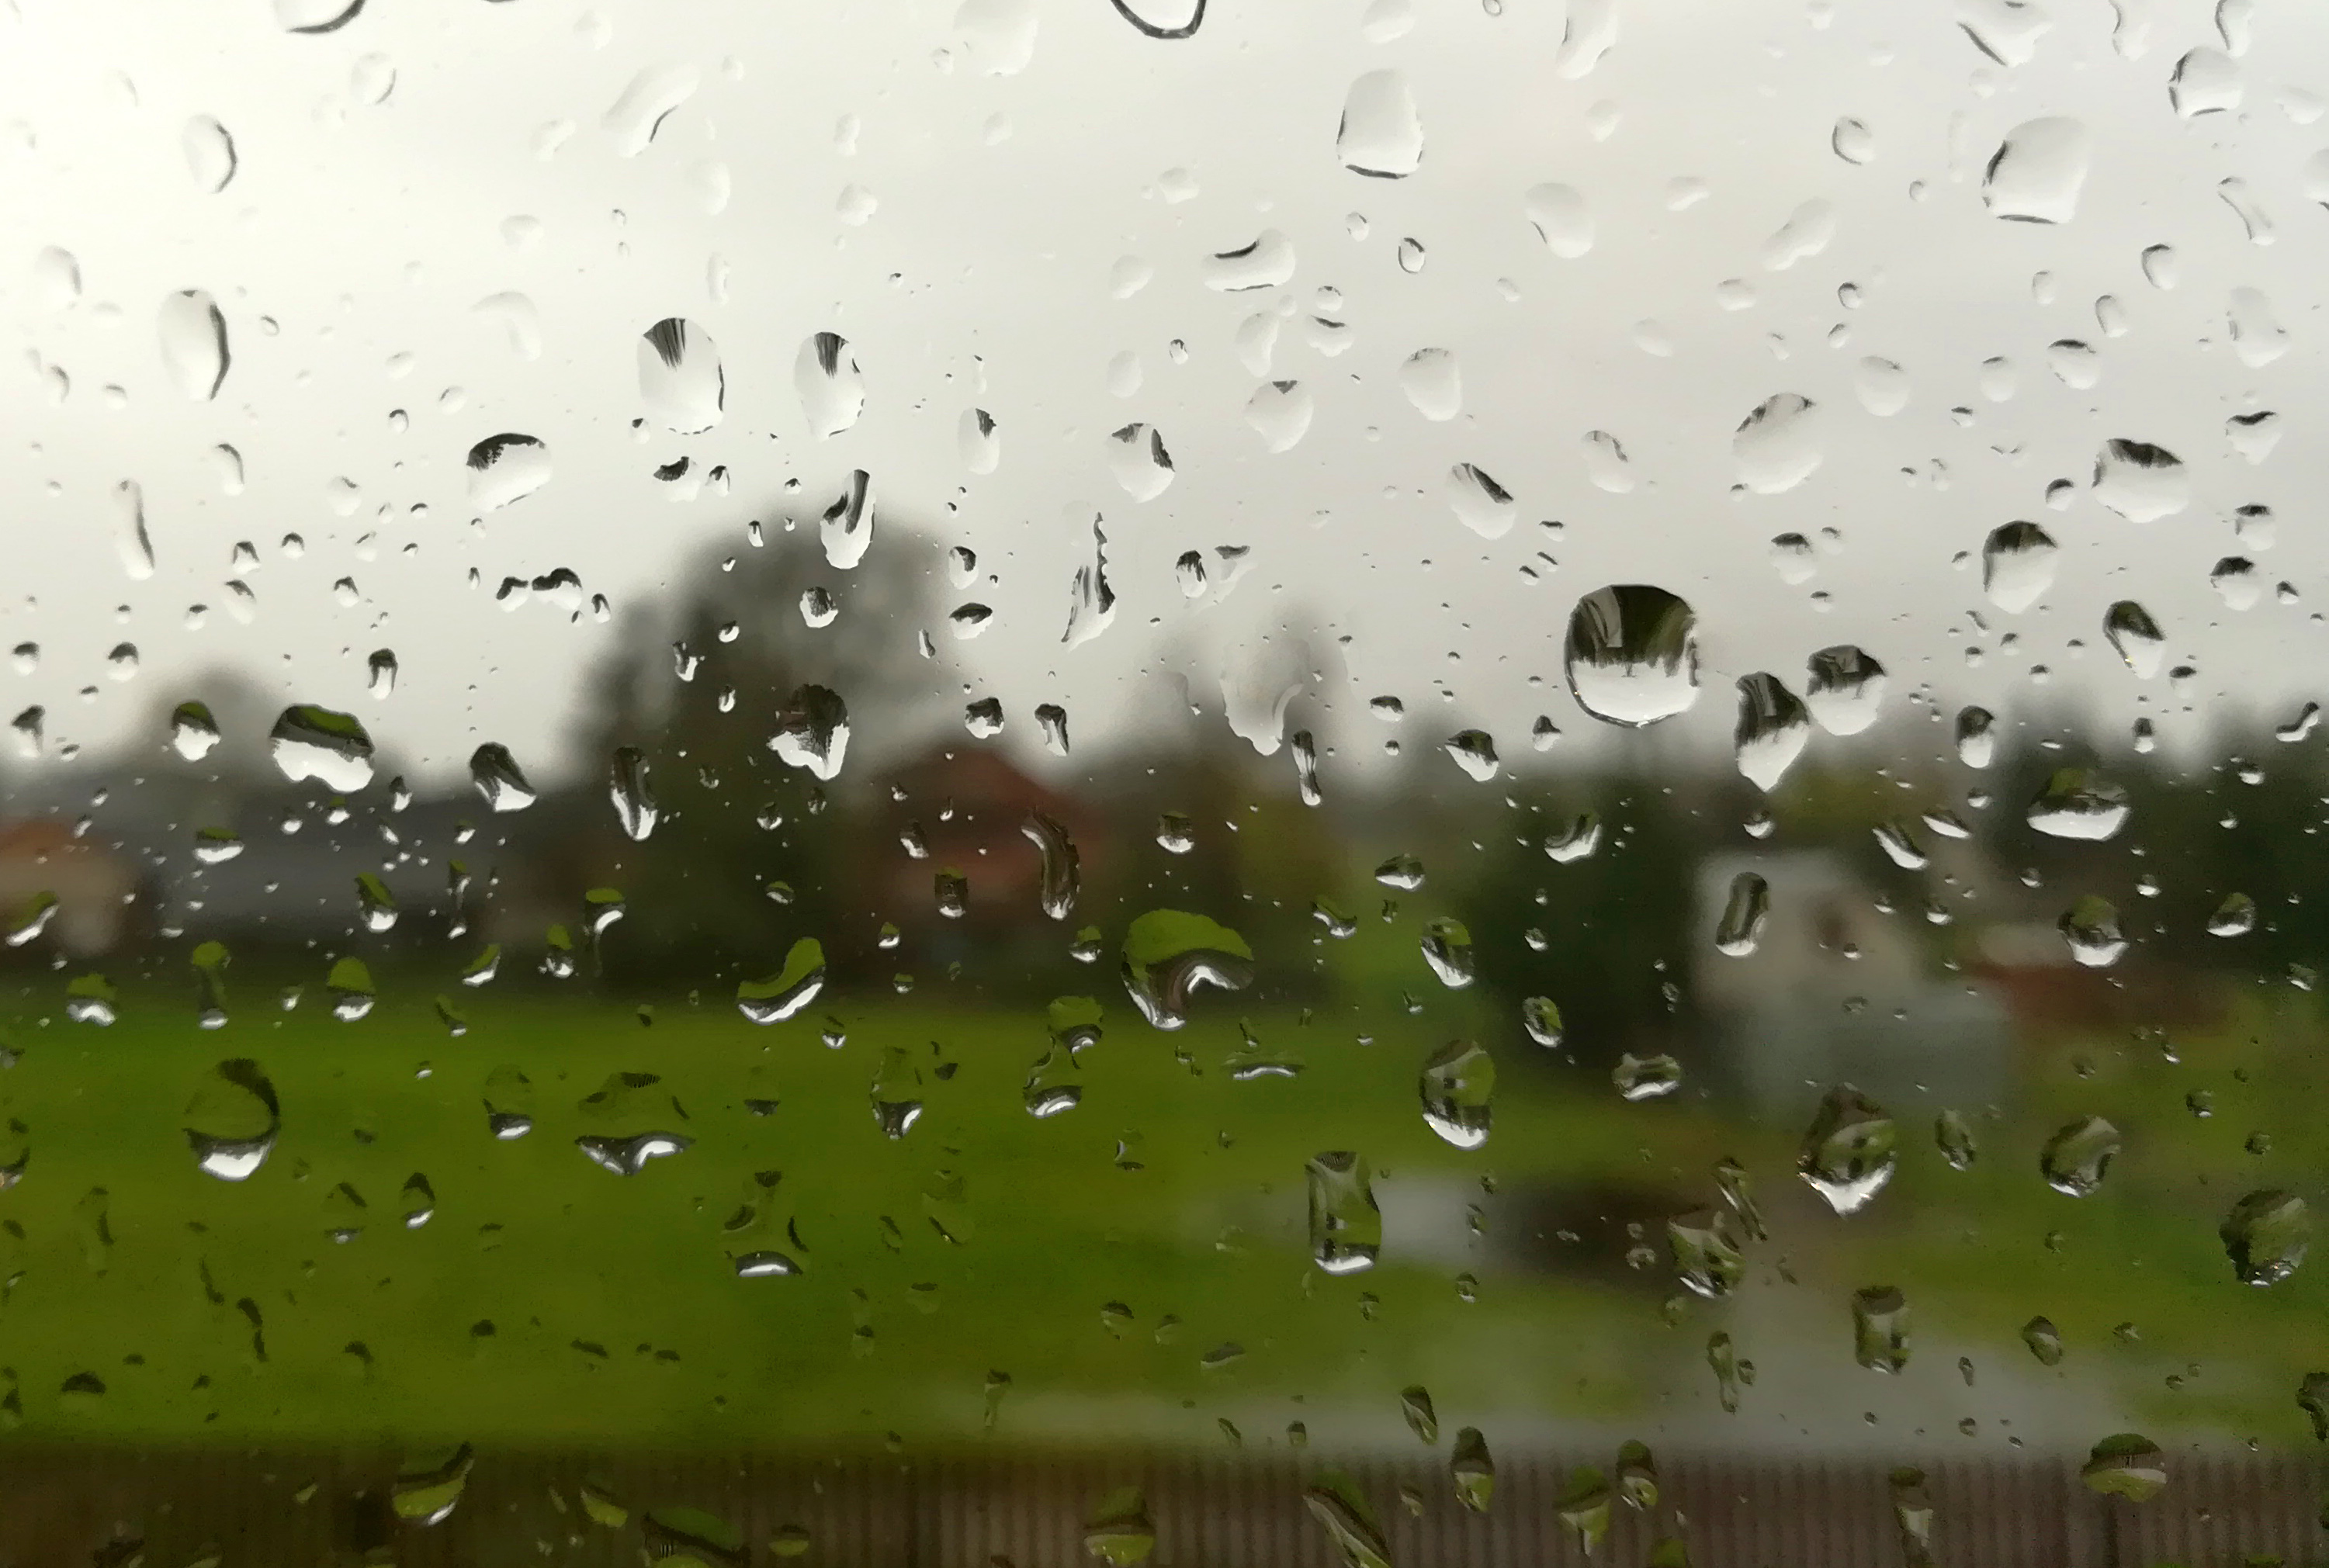 [OSTRZEŻENIE METEOROLOGICZNE] Na terenie powiatu kolbuszowskiego ma silnie wiać i intensywnie padać jeszcze kilka godzin - Zdjęcie główne